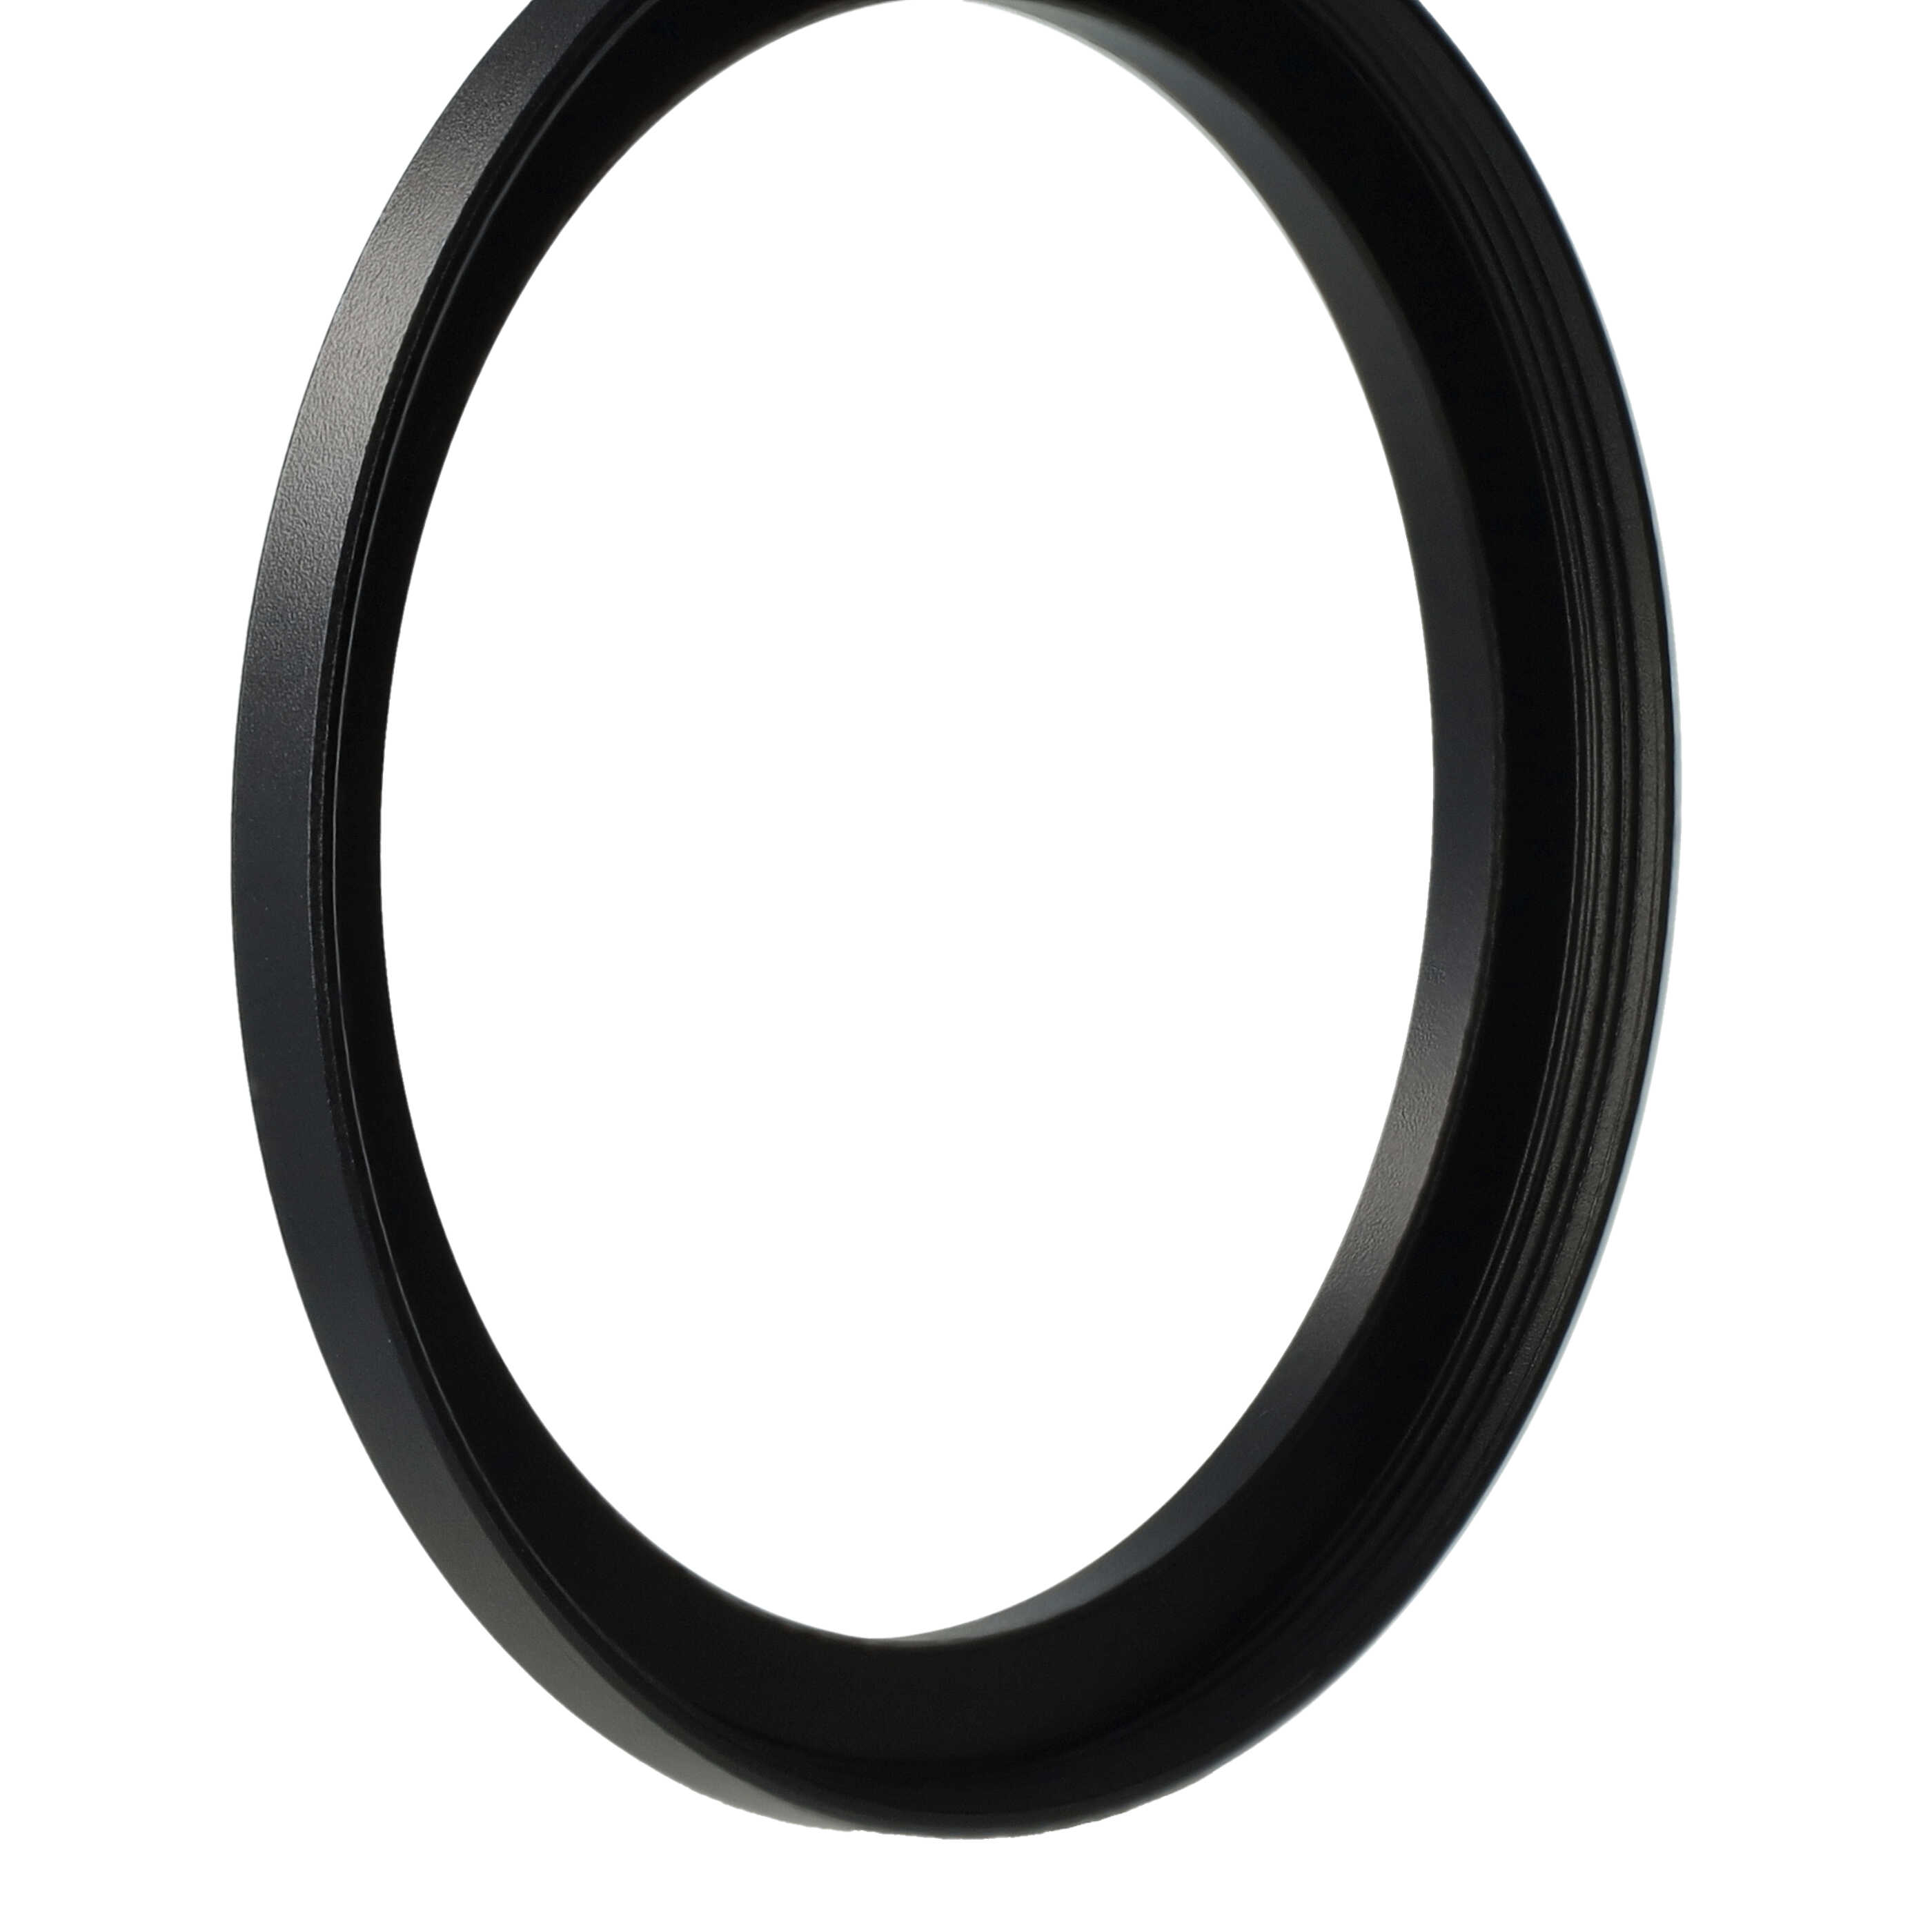 Step-Up-Ring Adapter 55 mm auf 62 mm passend für diverse Kamera-Objektive - Filteradapter